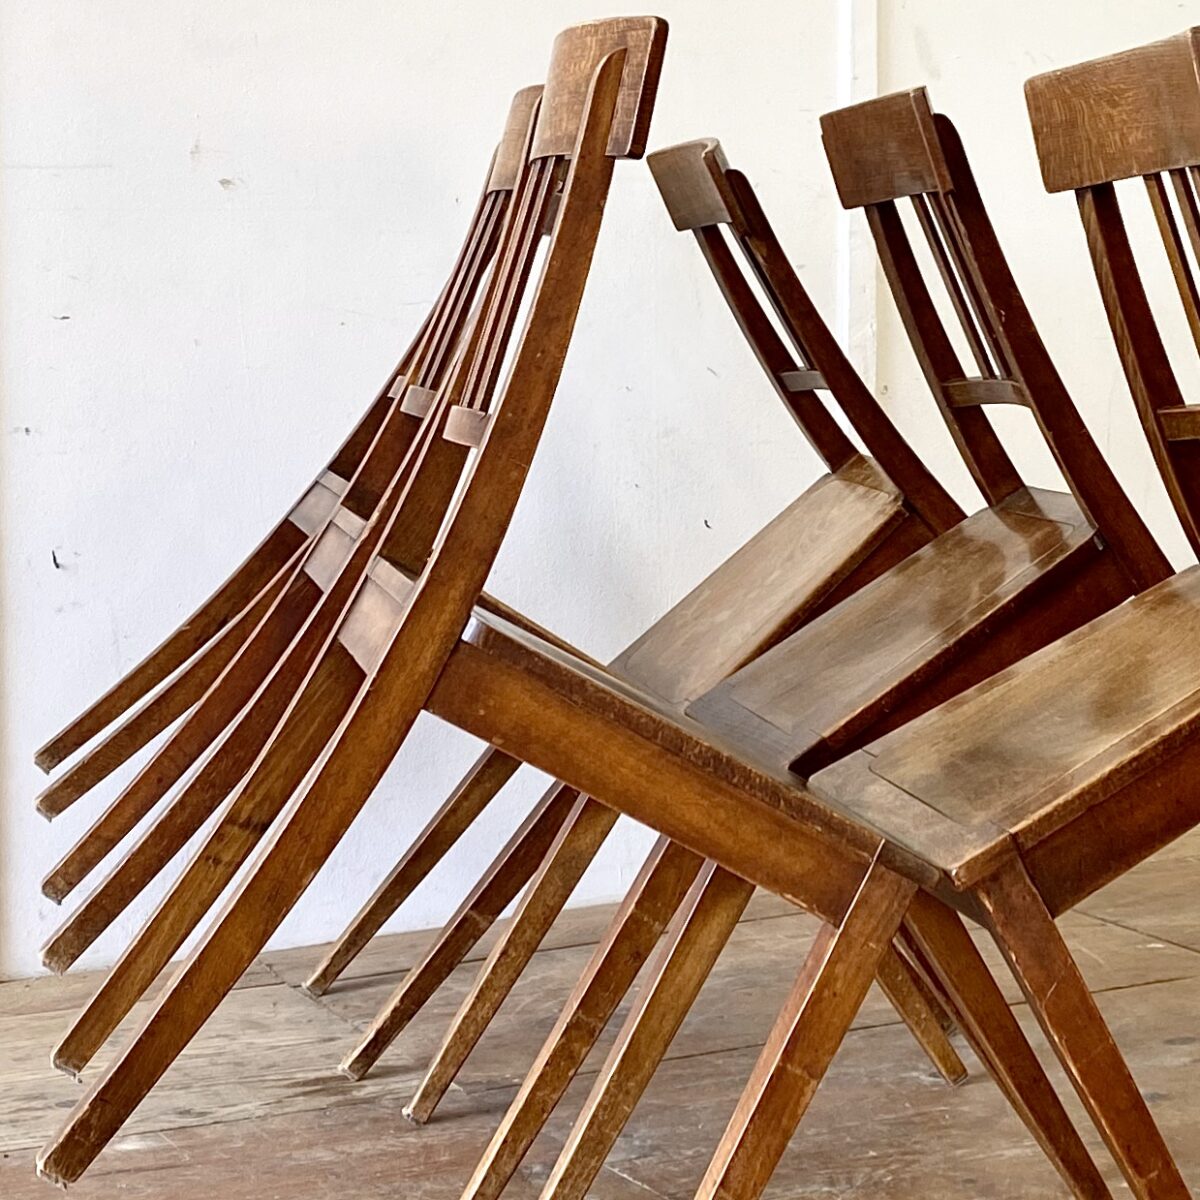 6er Set horgenglarus Stühle in stabilem guten Zustand. Ein mix aus Biedermeierstuhl, und der Bequemlichkeit eines Beizenstuhl, dunkelbraune Alterspatina. 